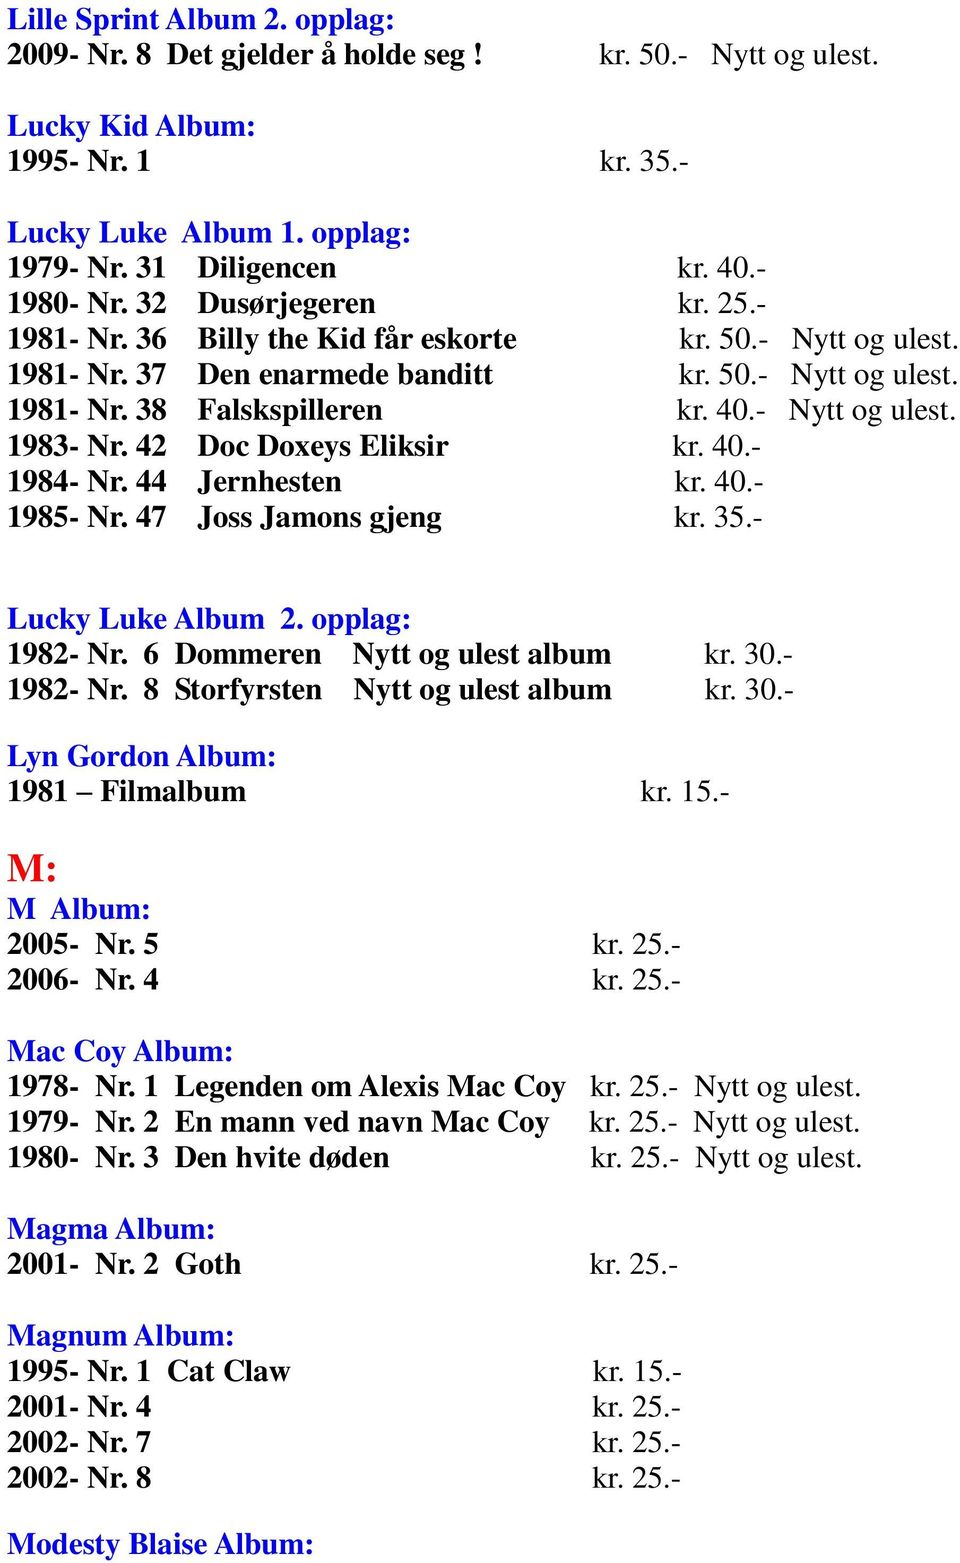 42 Doc Doxeys Eliksir kr. 40.- 1984- Nr. 44 Jernhesten kr. 40.- 1985- Nr. 47 Joss Jamons gjeng kr. 35.- Lucky Luke Album 2. opplag: 1982- Nr. 6 Dommeren Nytt og ulest album kr. 30.- 1982- Nr.